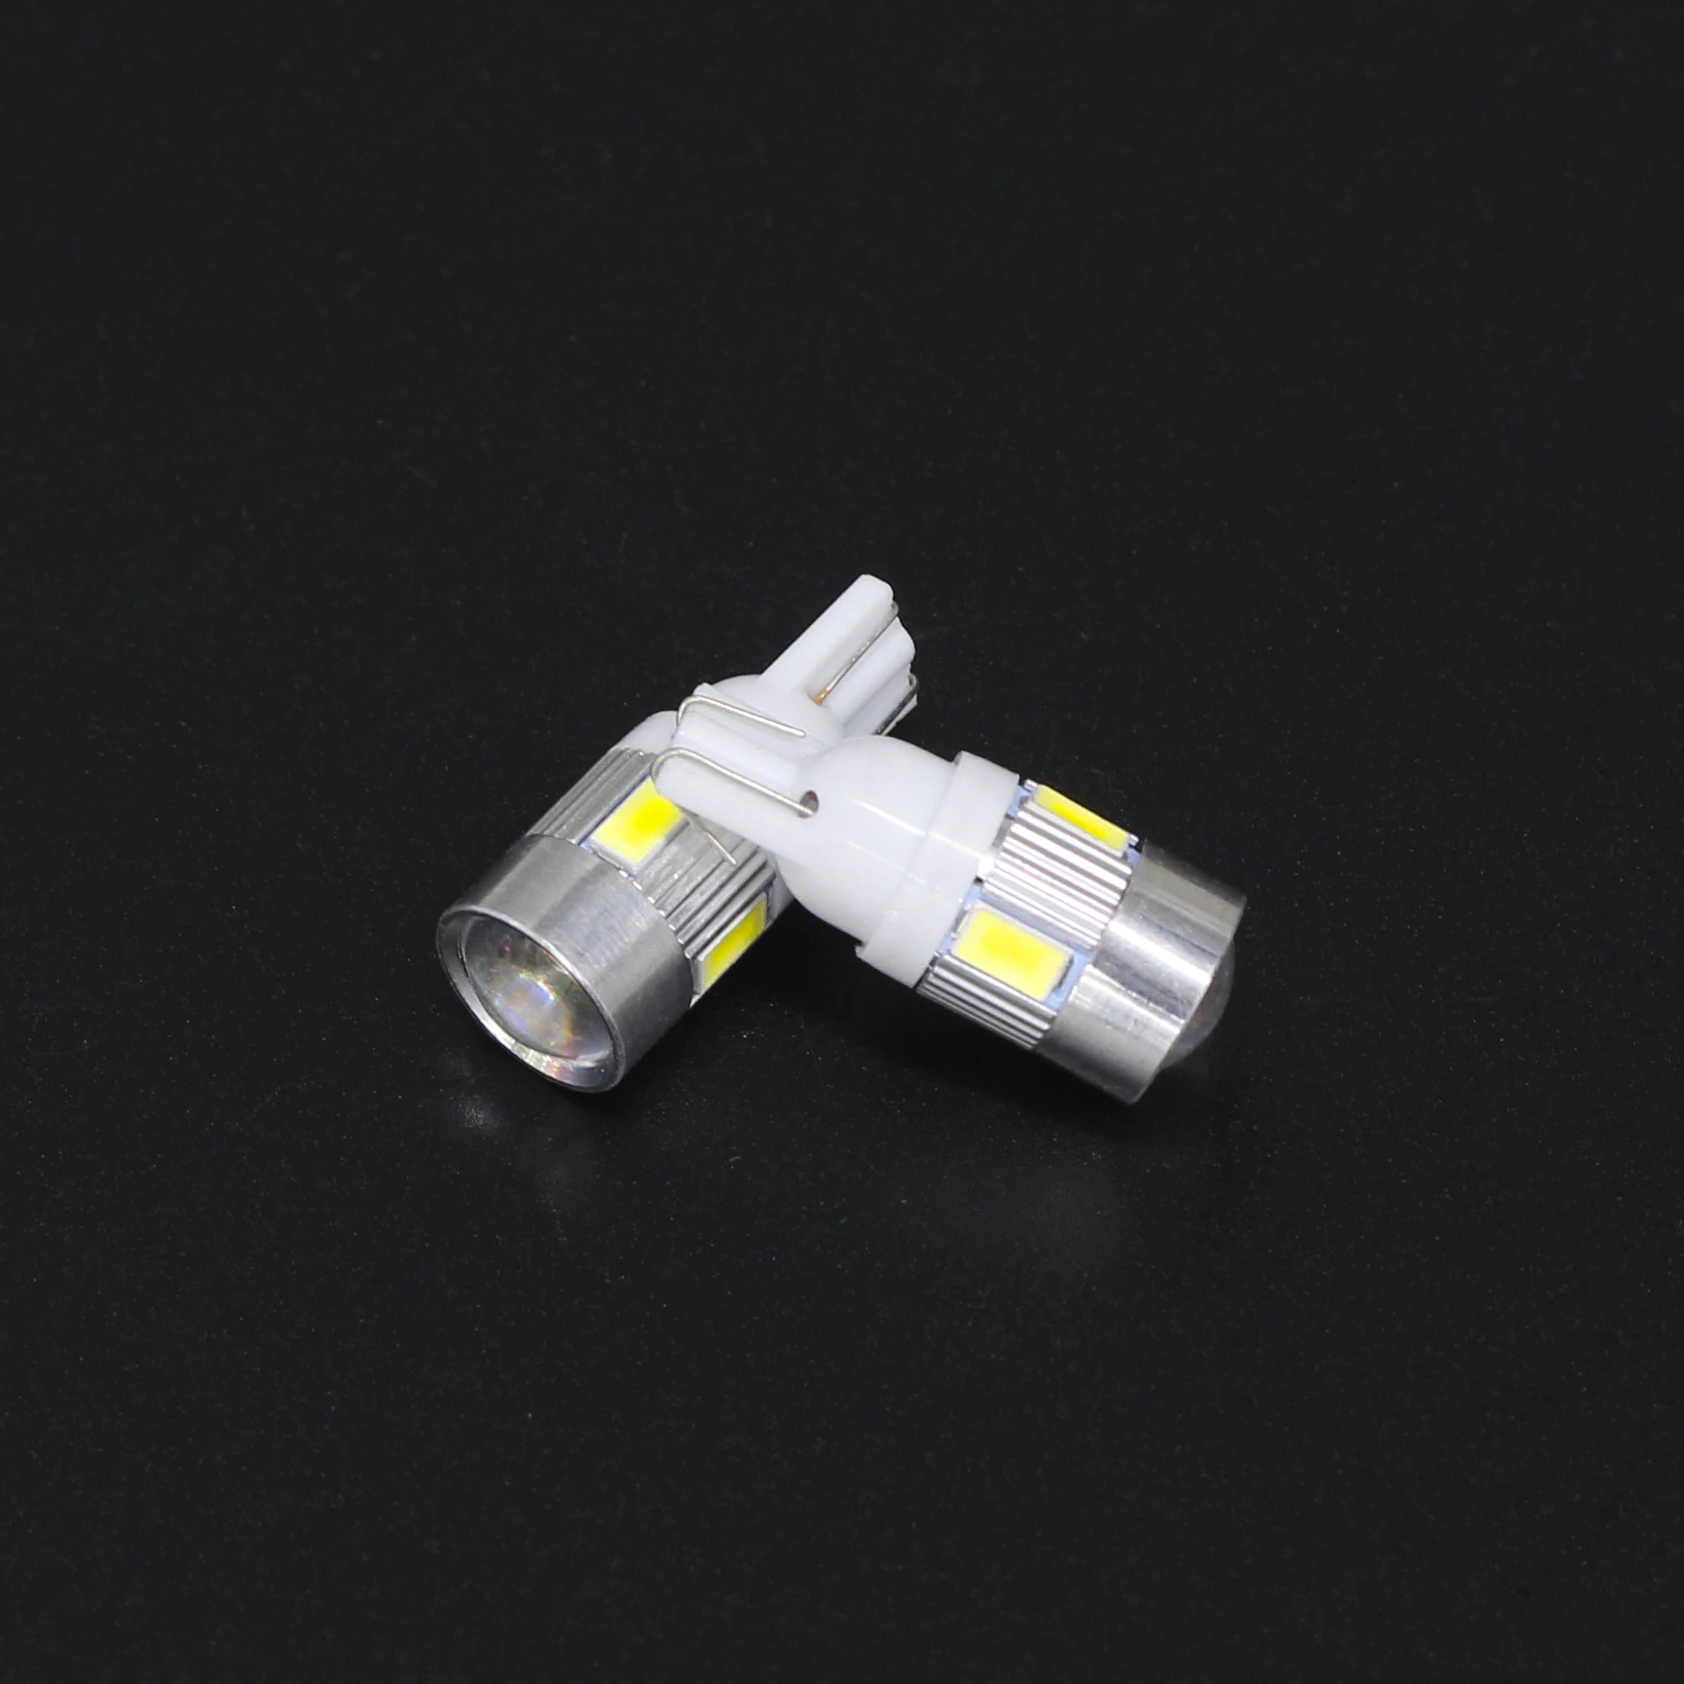 DXZ 2X Белый Мощный Автомобильный 3 Вт Светодиодный светильник s Показать широкий светильник T10 5630 6SMD автоматический светильник-излучающая Диодная лампа аксессуары для ламп